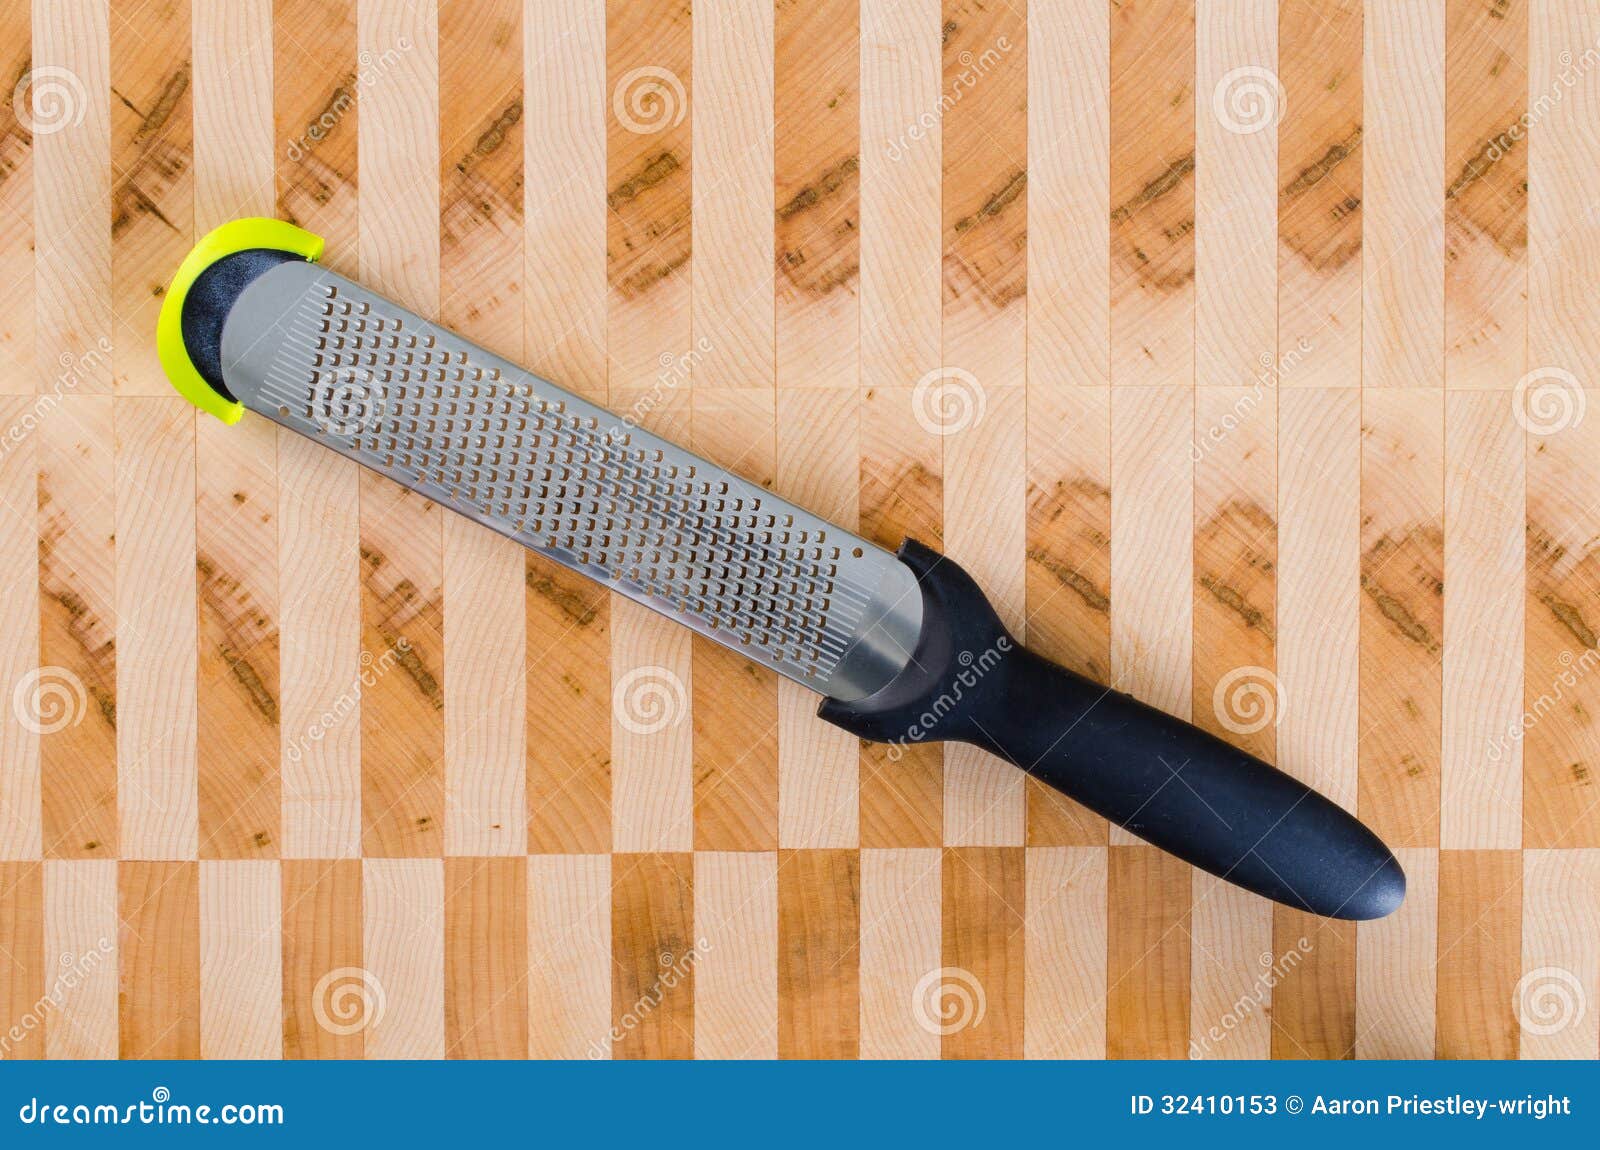 a fine rasp on a cutting board